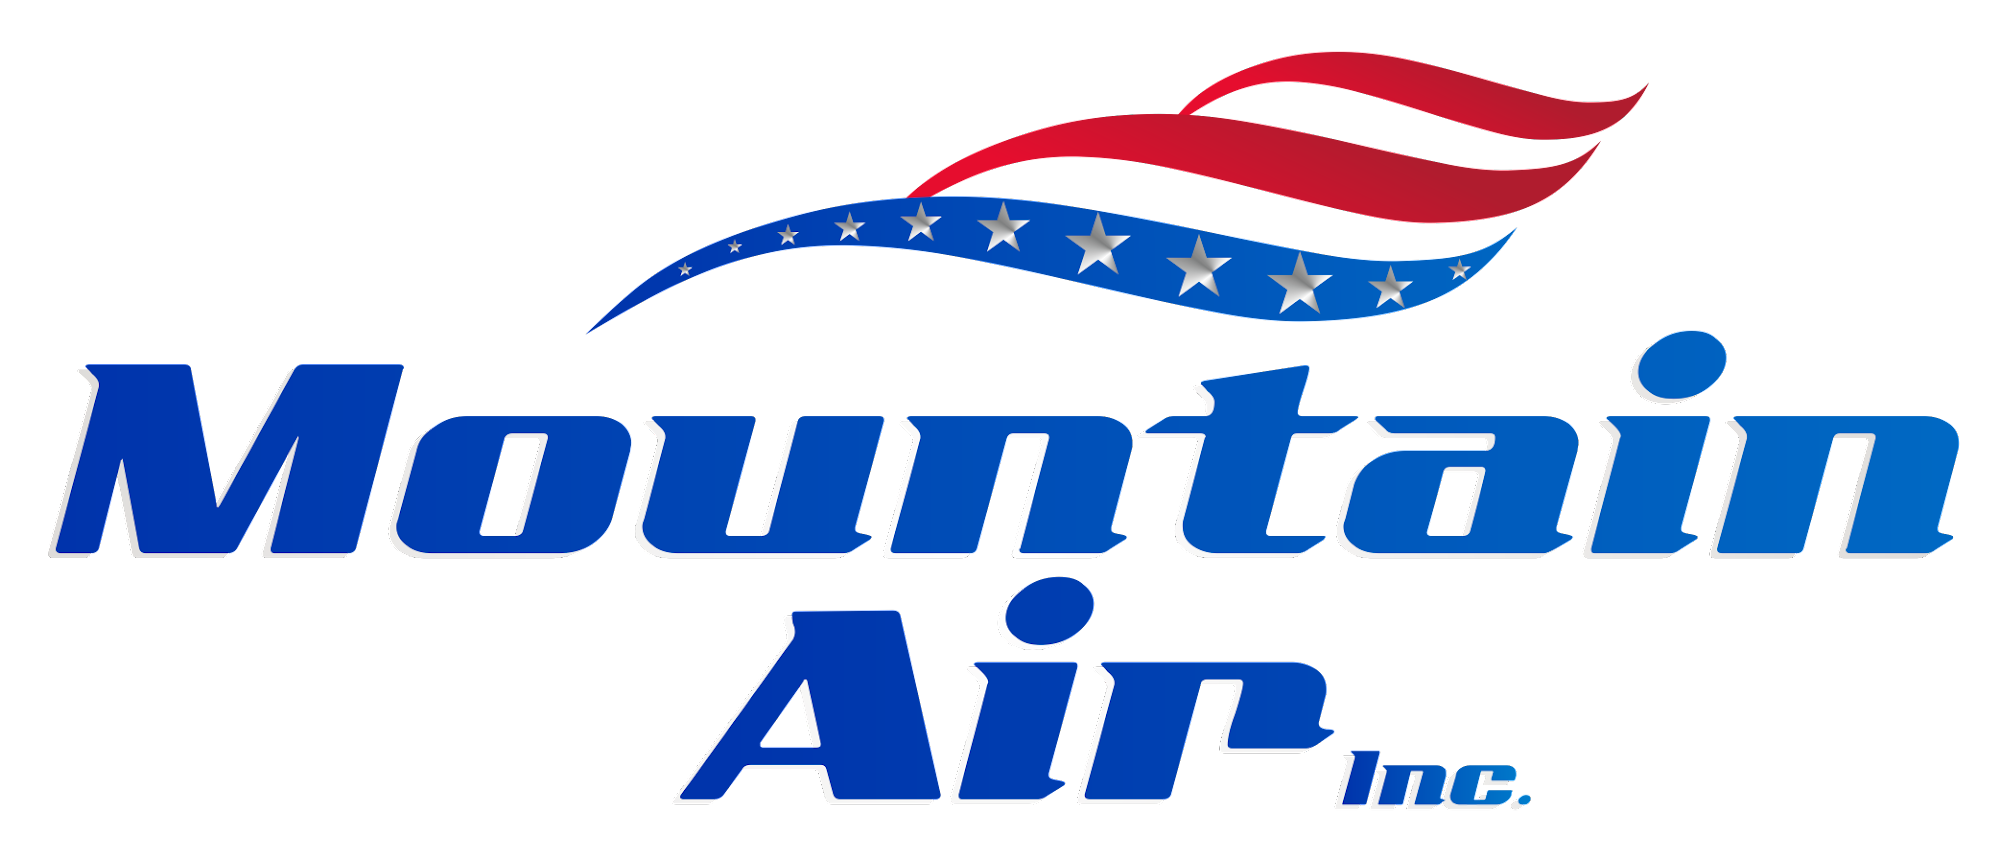 Mountain Air Inc